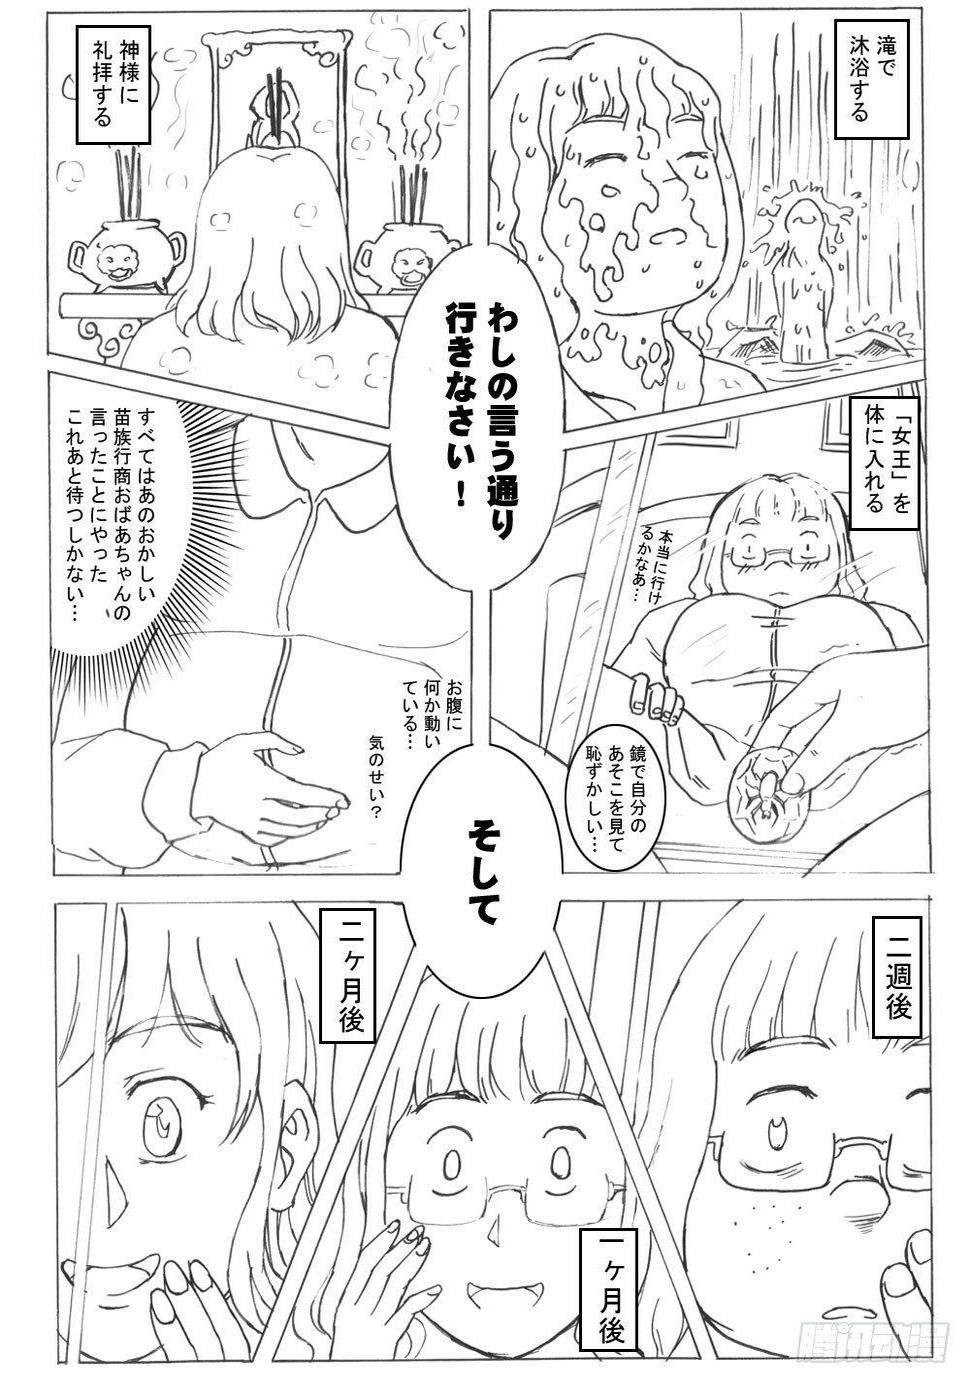 336 未完的漫画3(日文)1